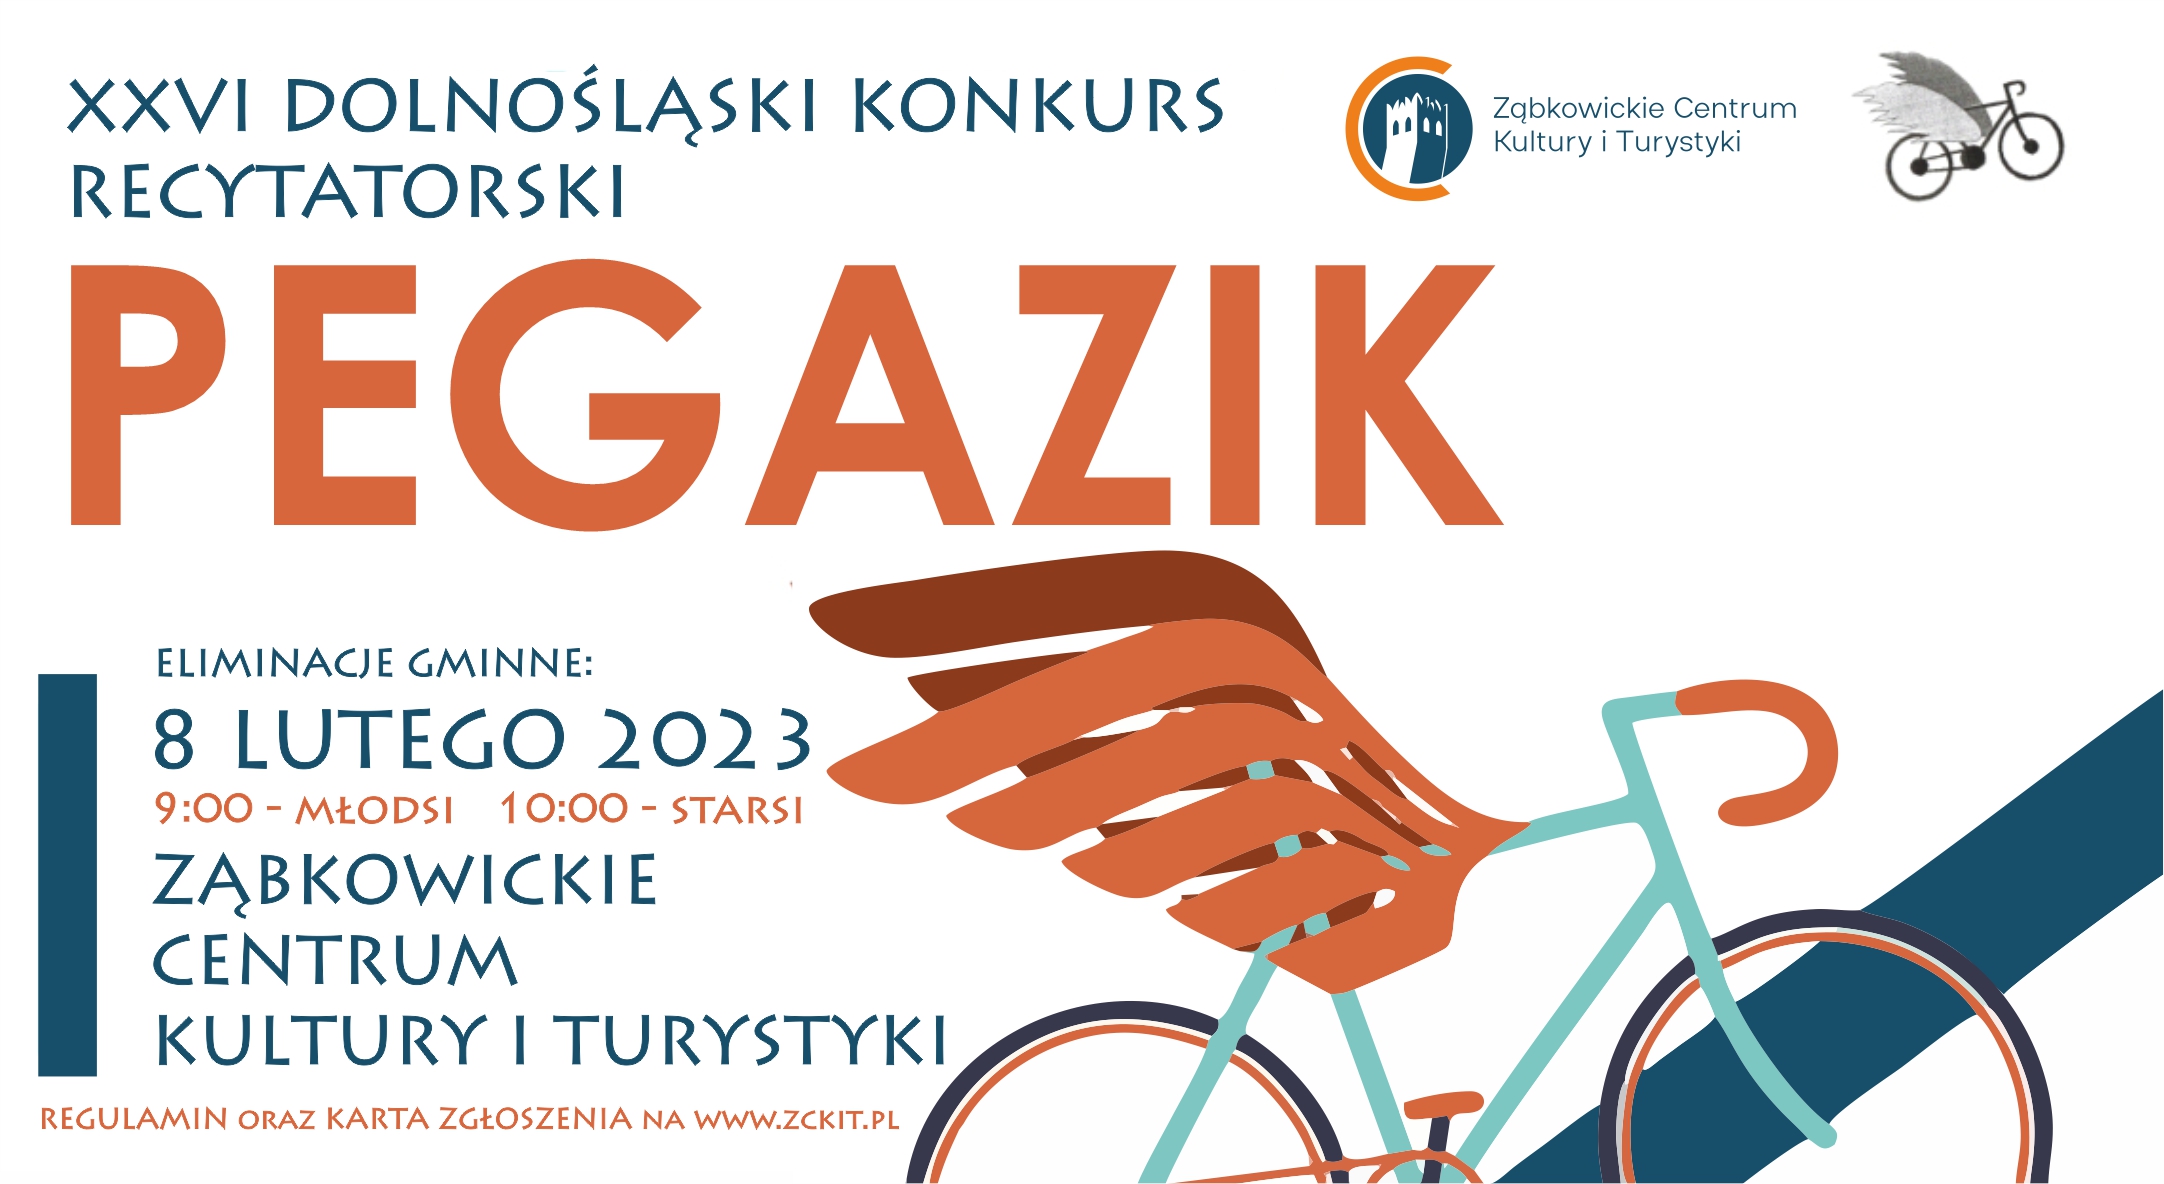 Plakat o XXVI Dolnośląskim Konkursie Recytatorskim "Pegazik" 8 lutego 2023 o godzinie 9:00 w Ząbkowickim Centrum Kultury i Turystyki.